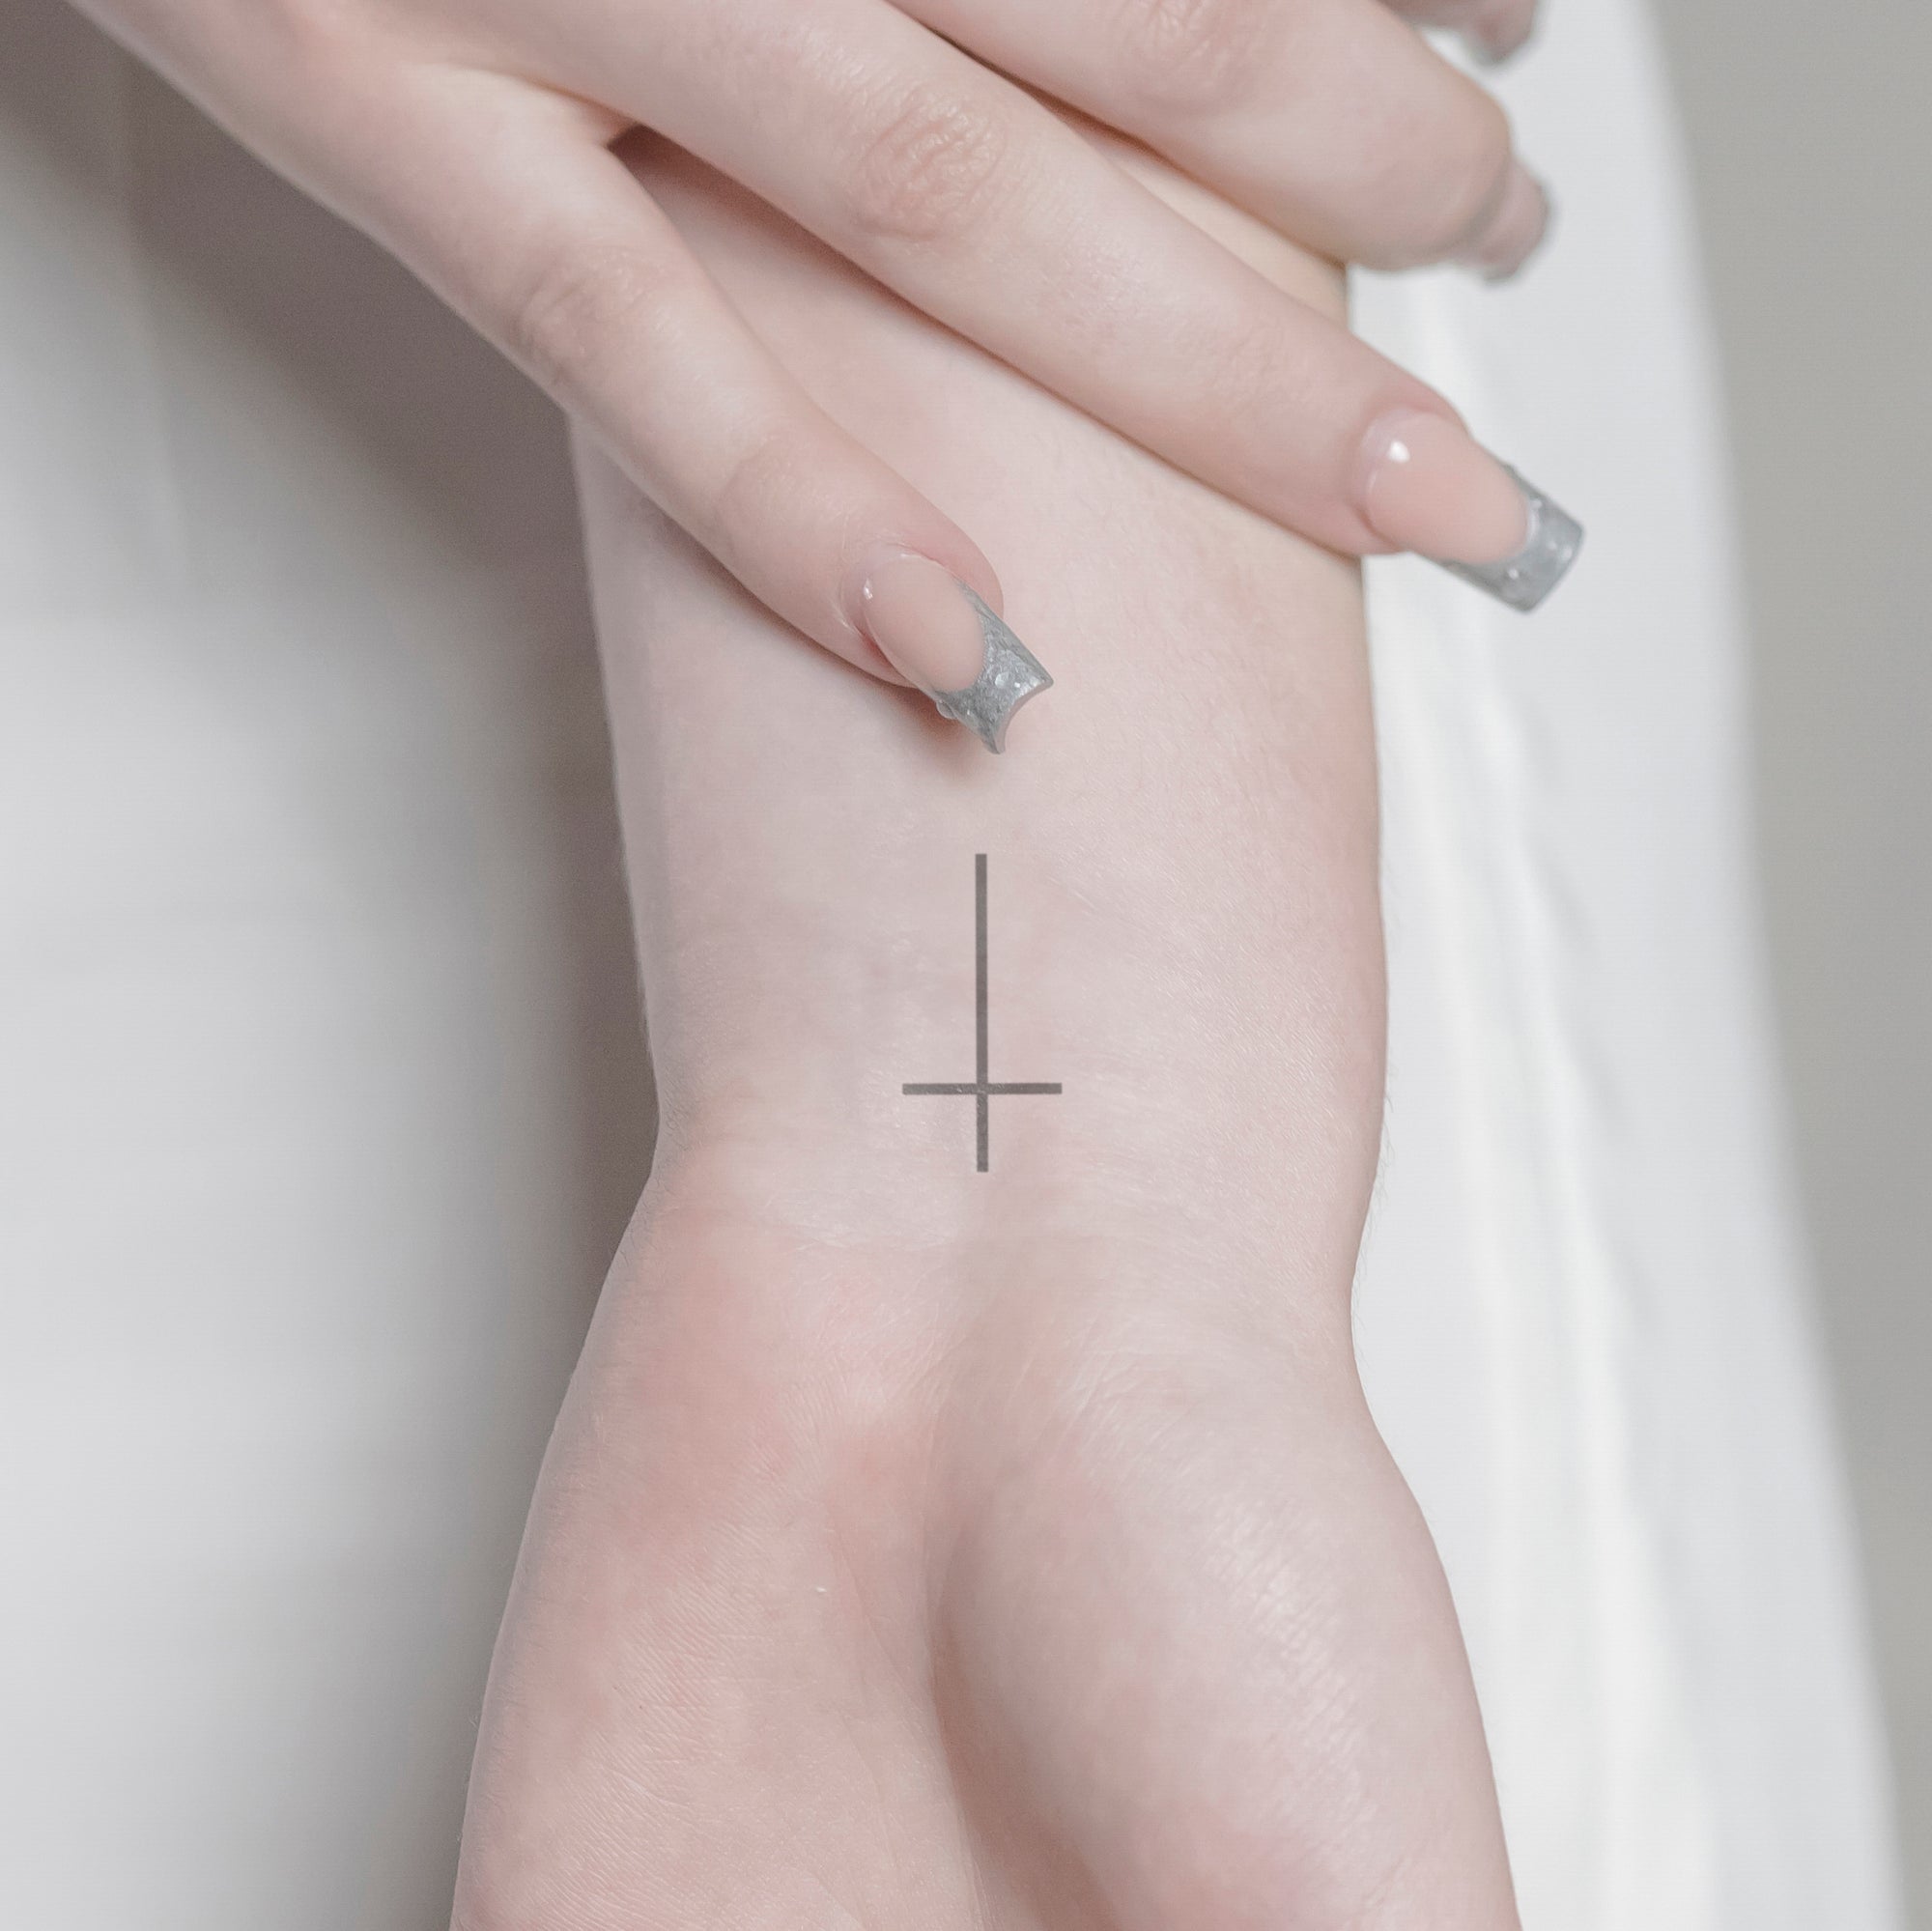 Kleines Kreuz Tattoo von minink, der Marke für temporäre Tattoos.